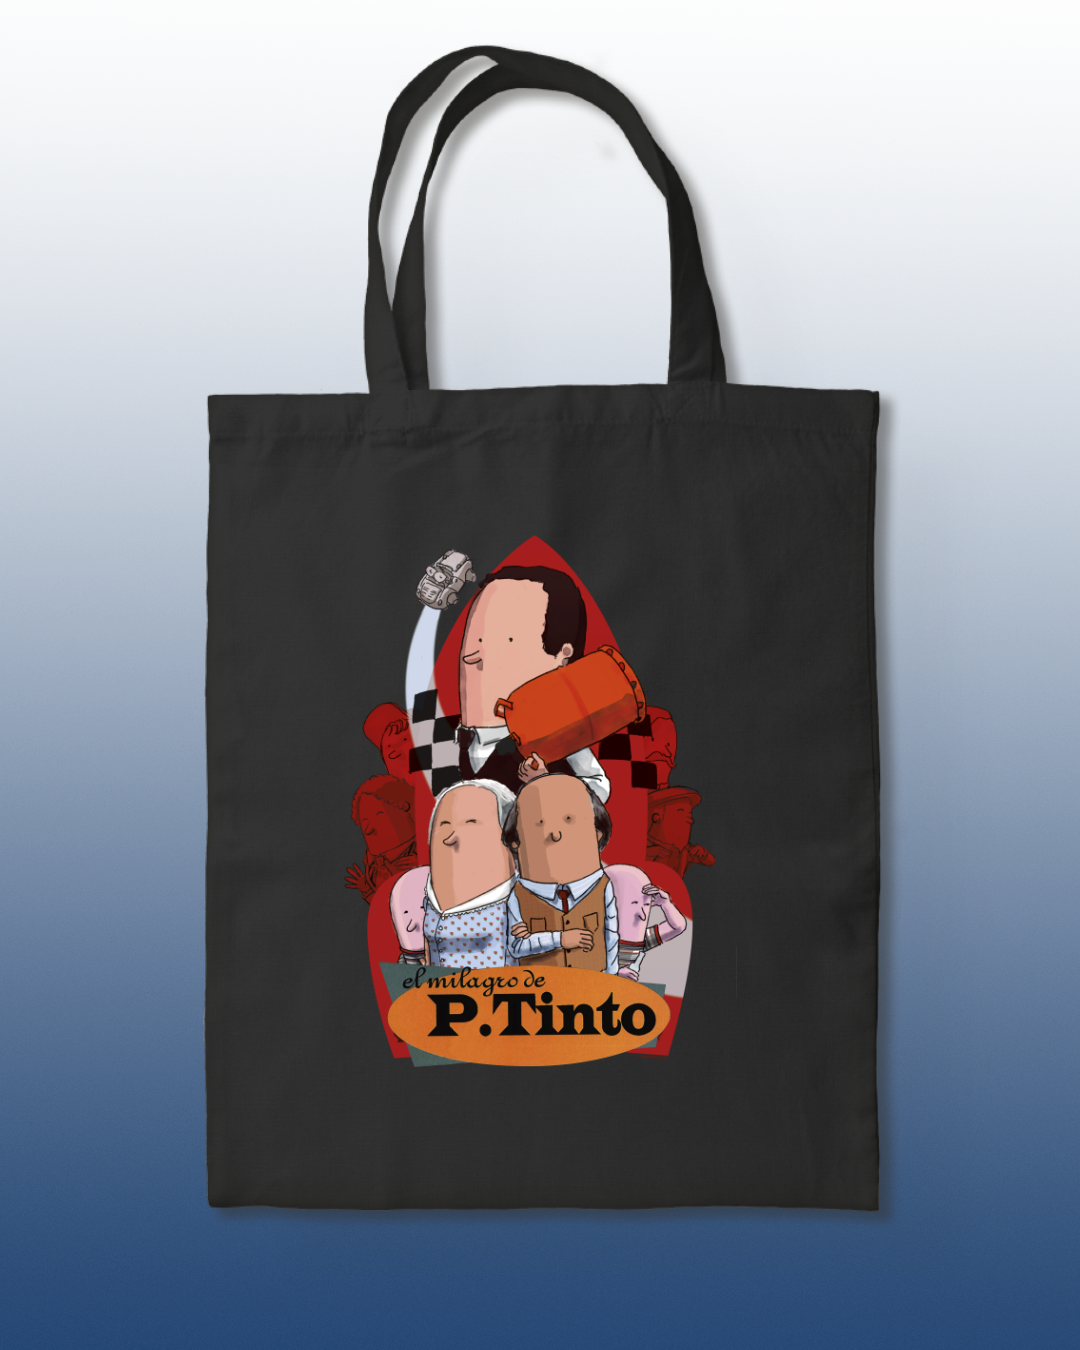 P. Tinto Tote Bag